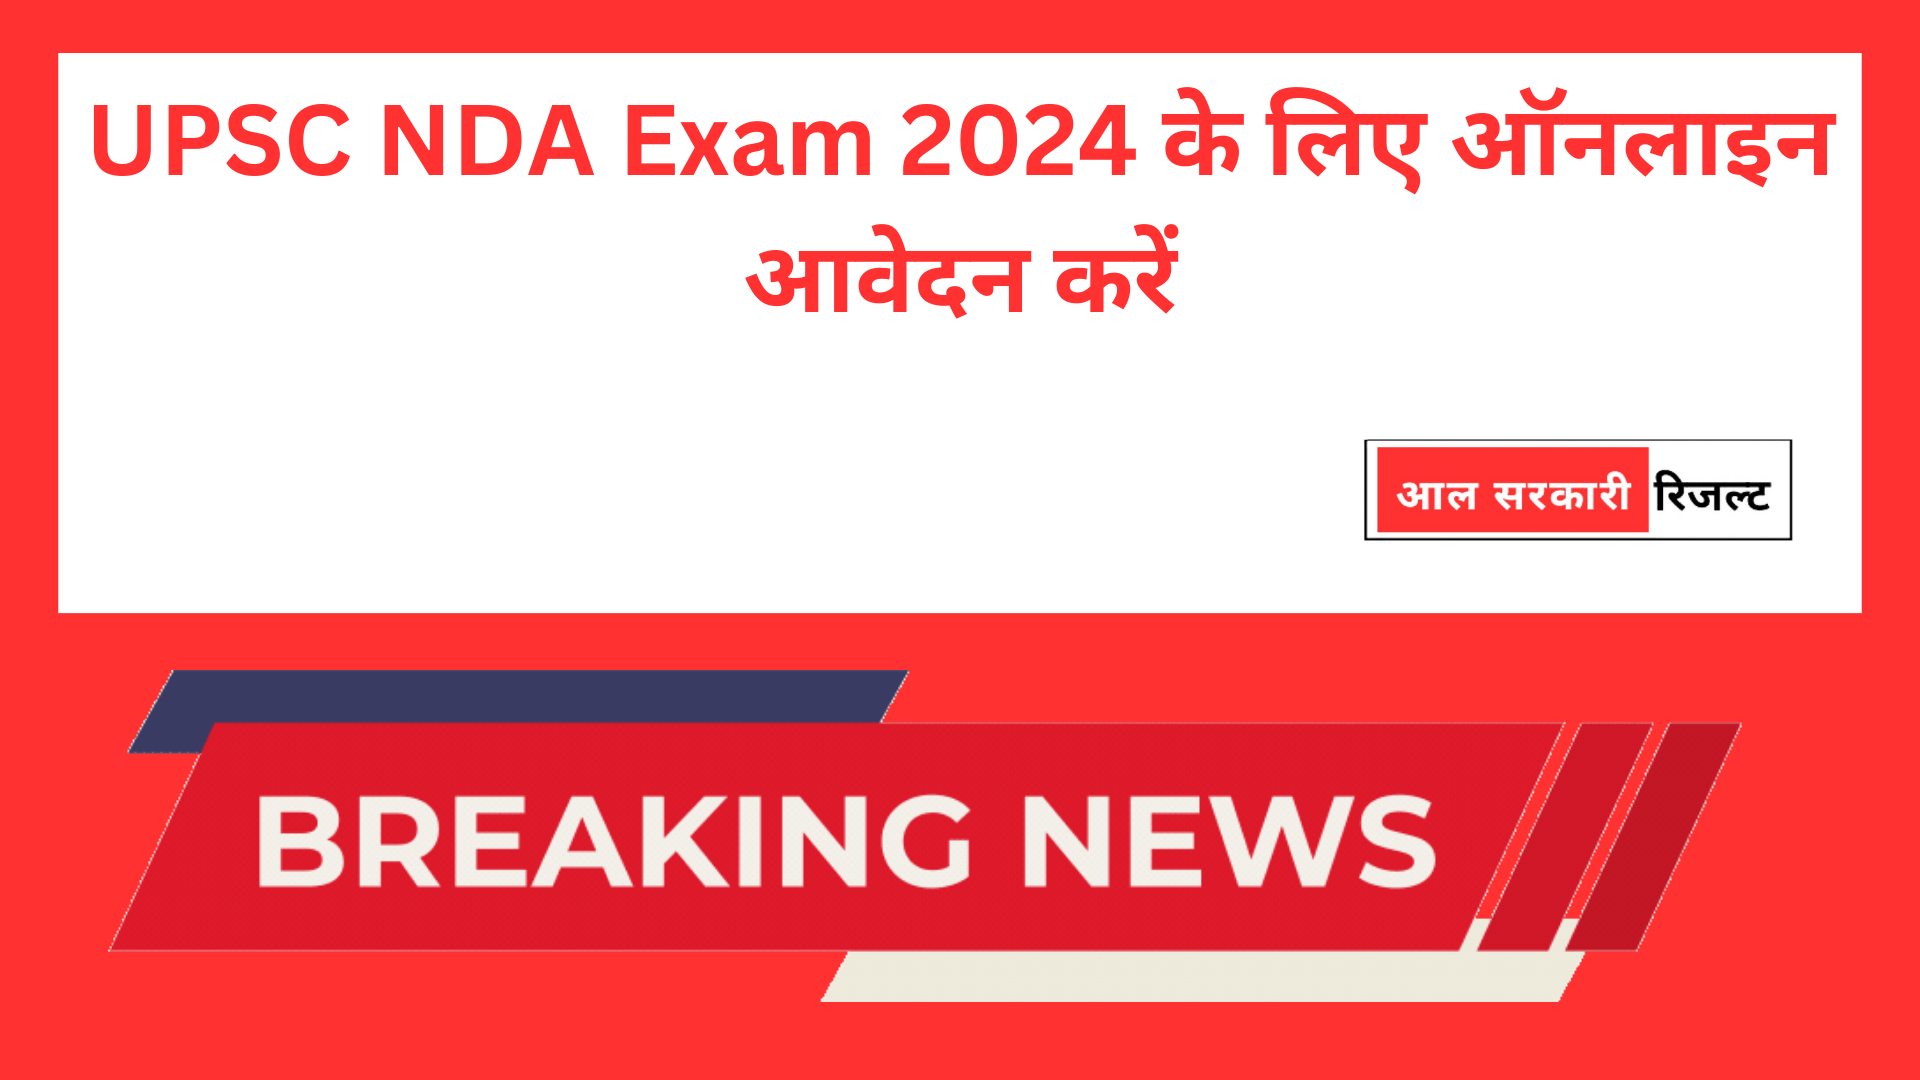 UPSC NDA Exam 2024 के लिए ऑनलाइन आवेदन करें